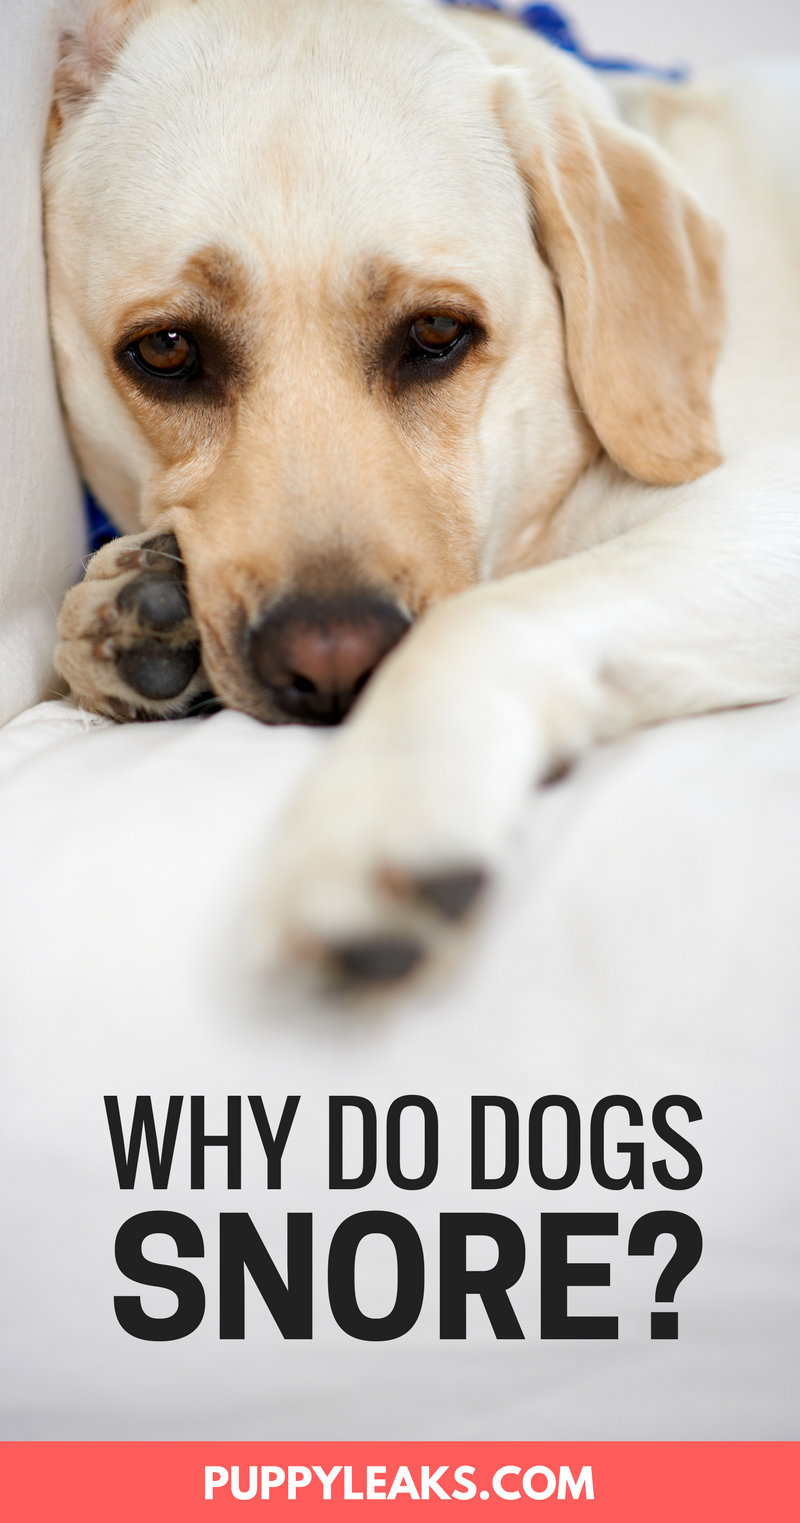 개가 코를 고는 이유는 무엇입니까?